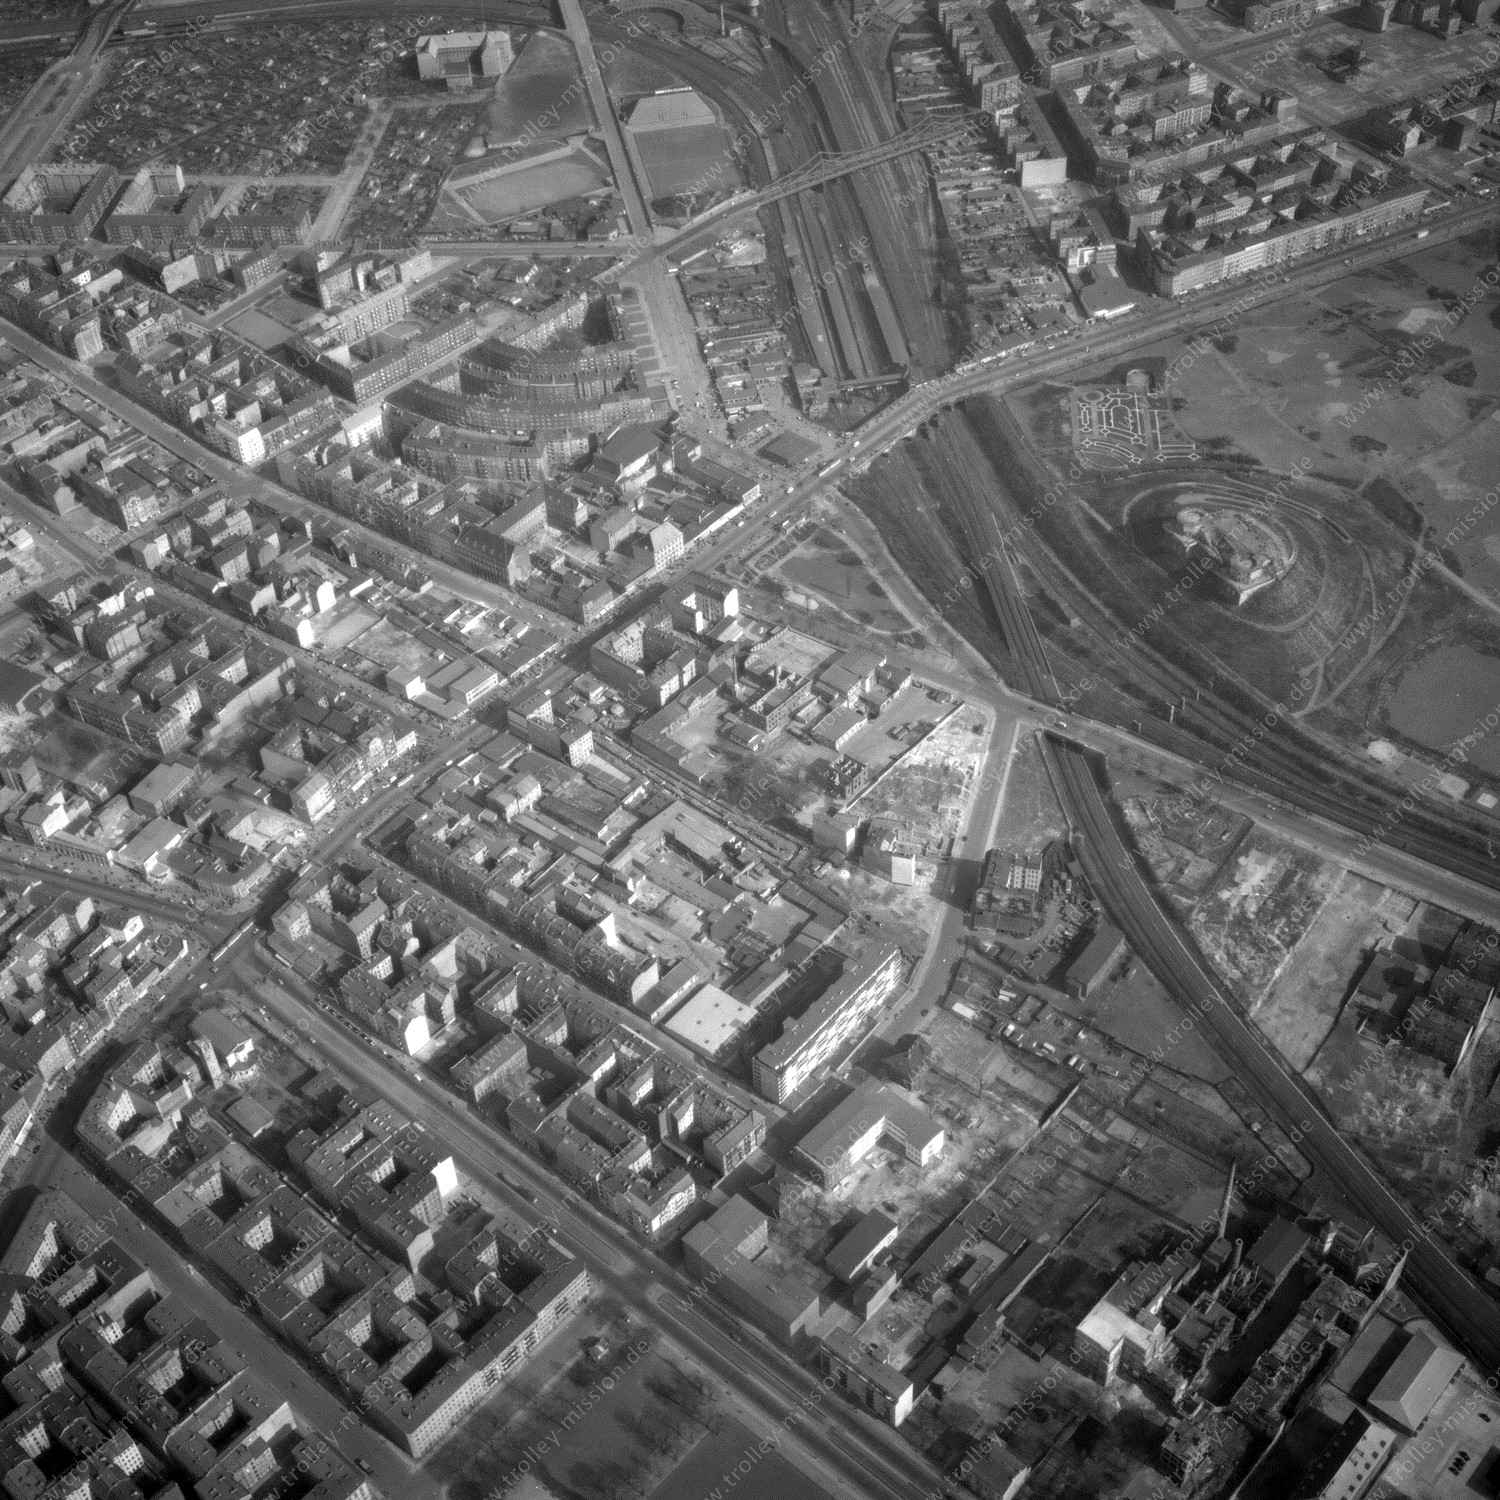 Alte Fotos und Luftbilder von Berlin - Luftbildaufnahme Nr. 11 - Historische Luftaufnahmen von West-Berlin aus dem Jahr 1954 - Flugstrecke Romeo